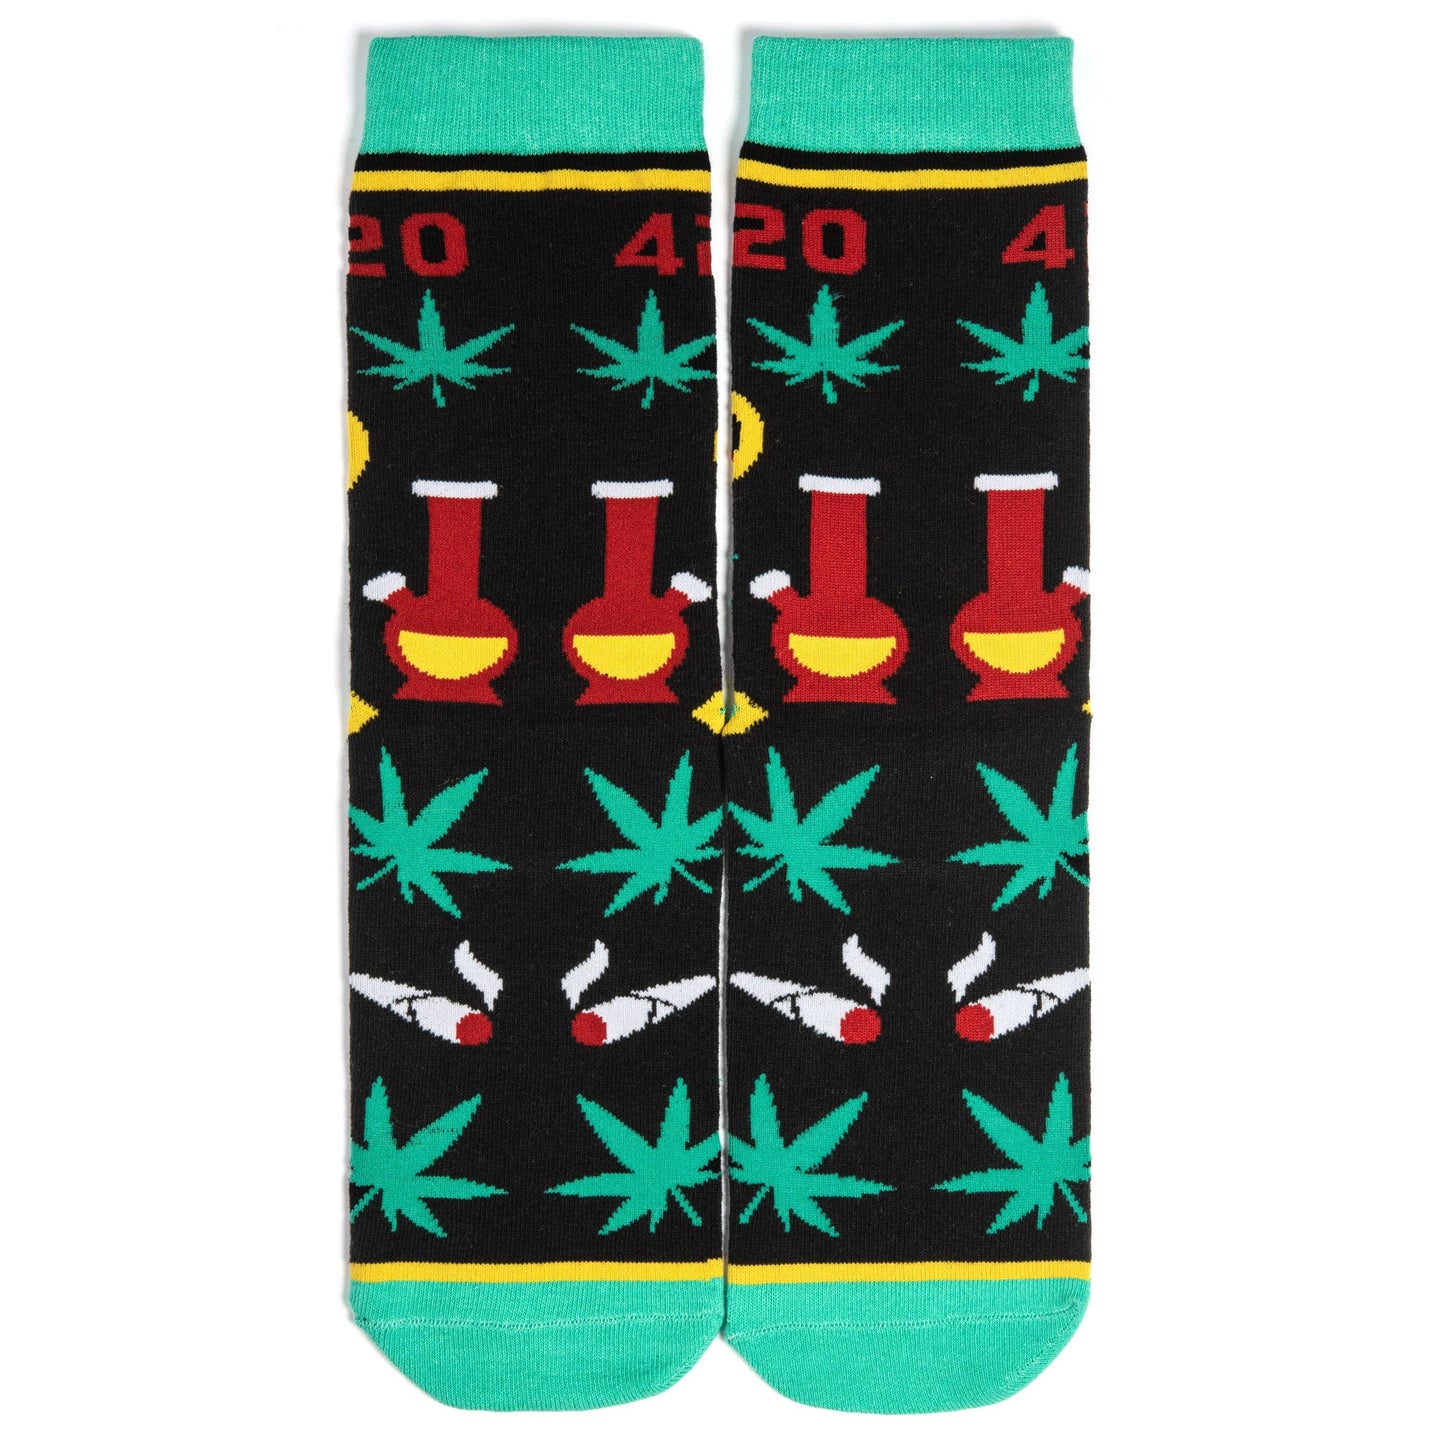 Lavley - 420 Weed Socks